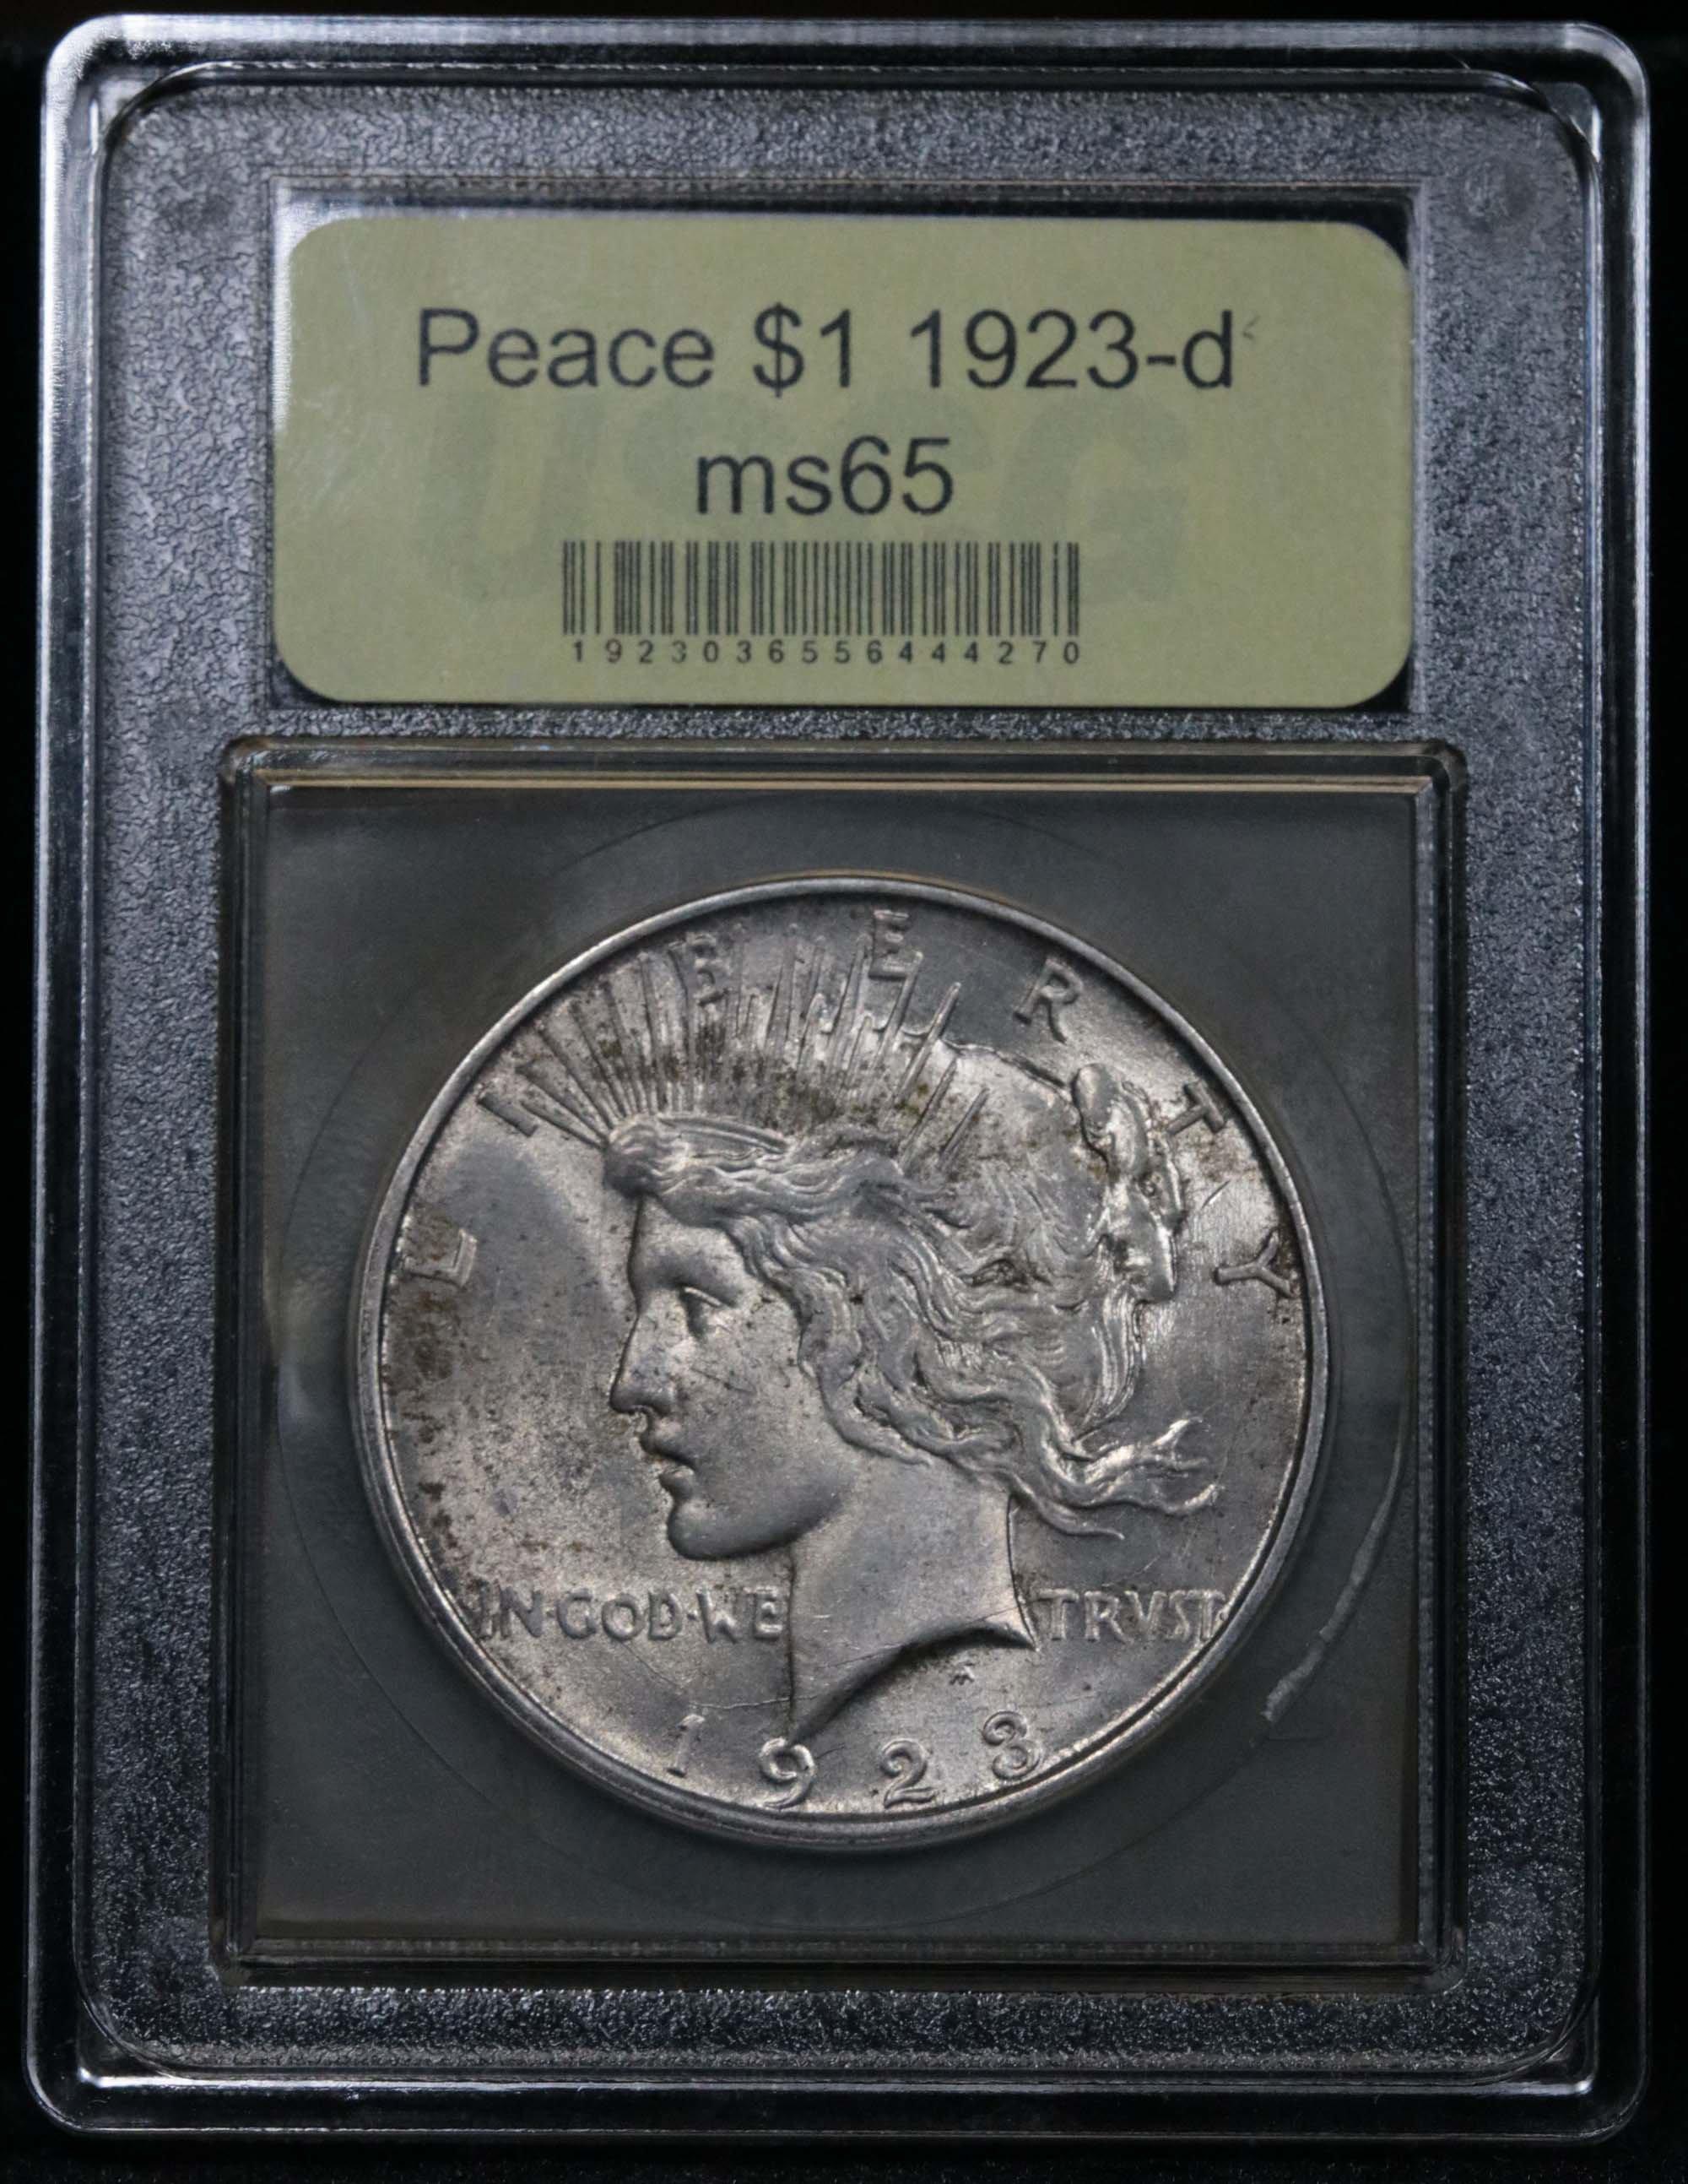 ***Auction Highlight*** 1923-d Peace Dollar $1 Graded GEM Unc by USCG (fc)